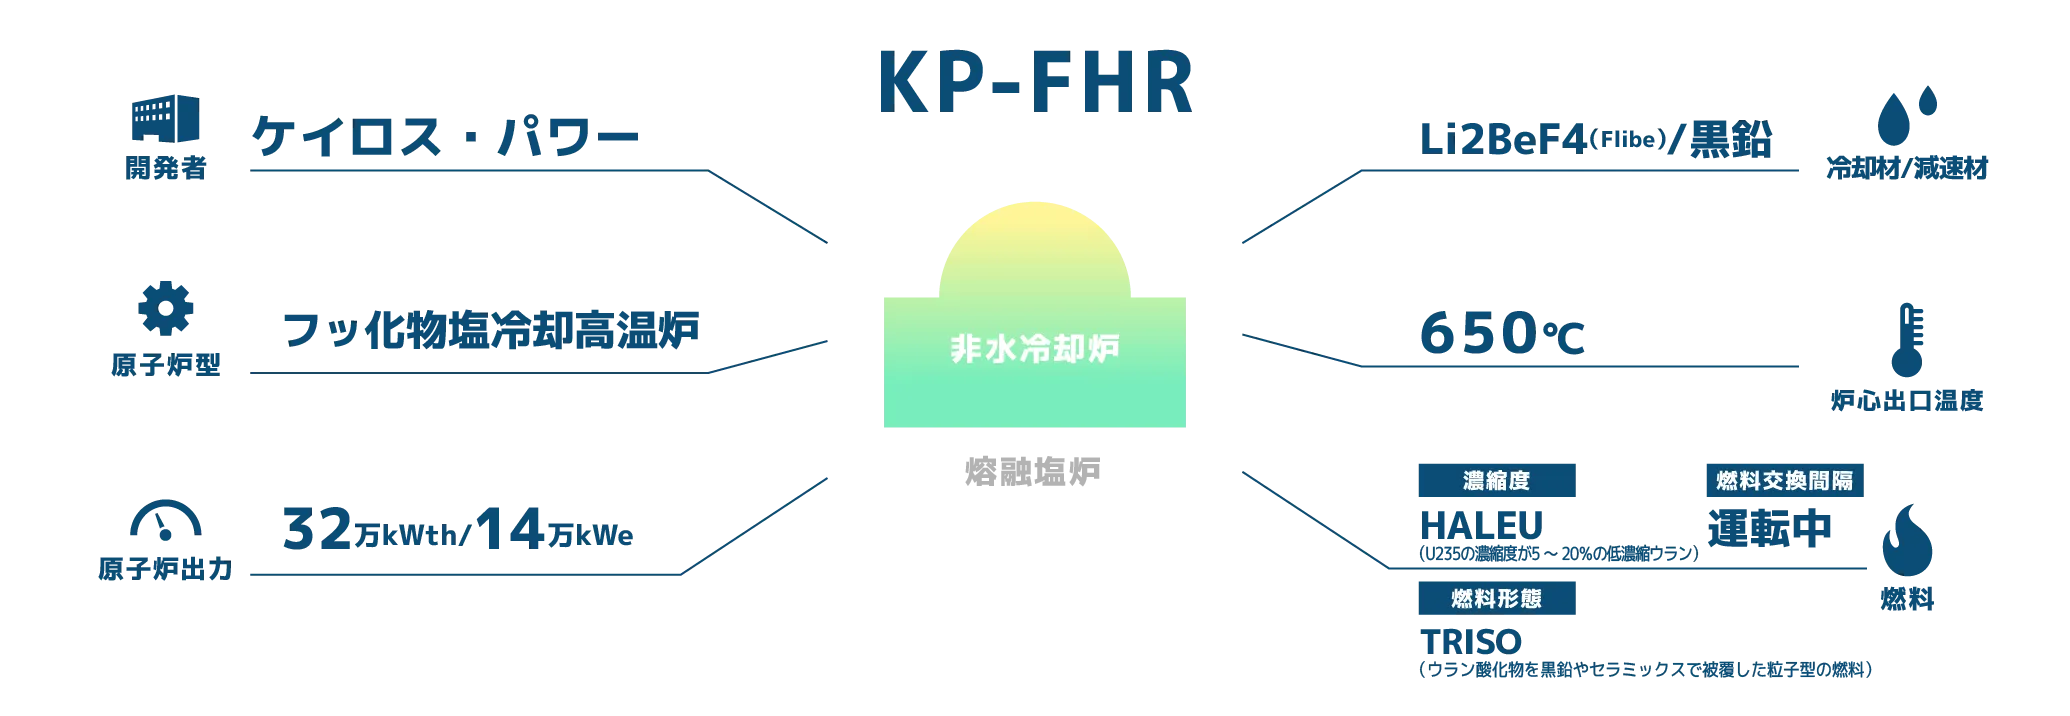 KP-FHR